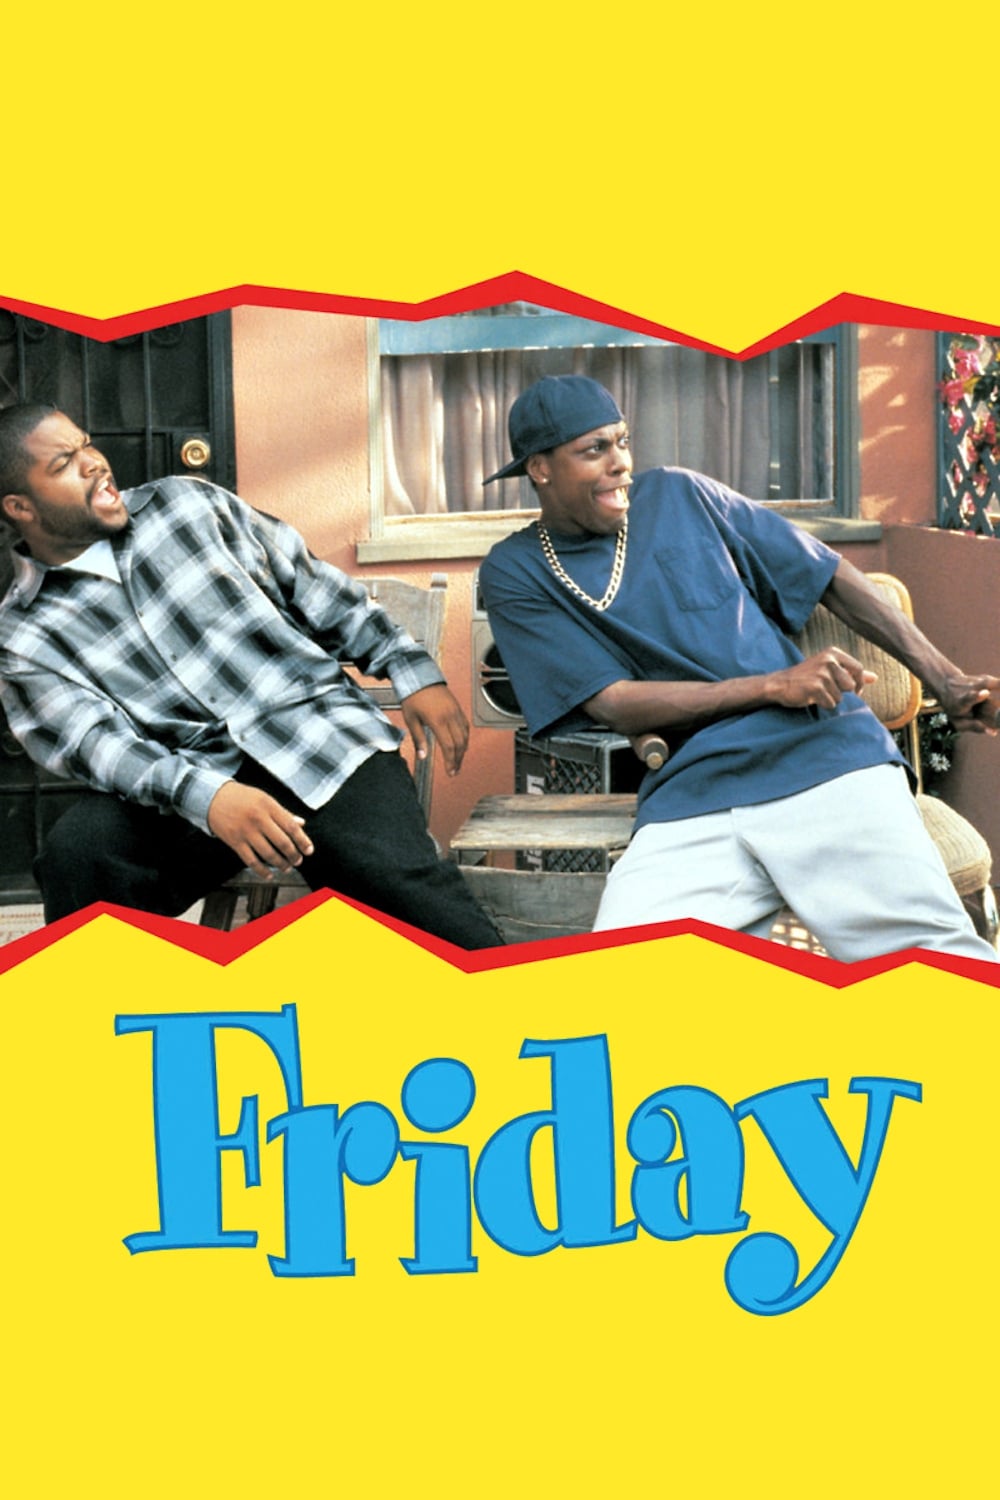 دانلود فیلم Friday 1995 با زیرنویس فارسی